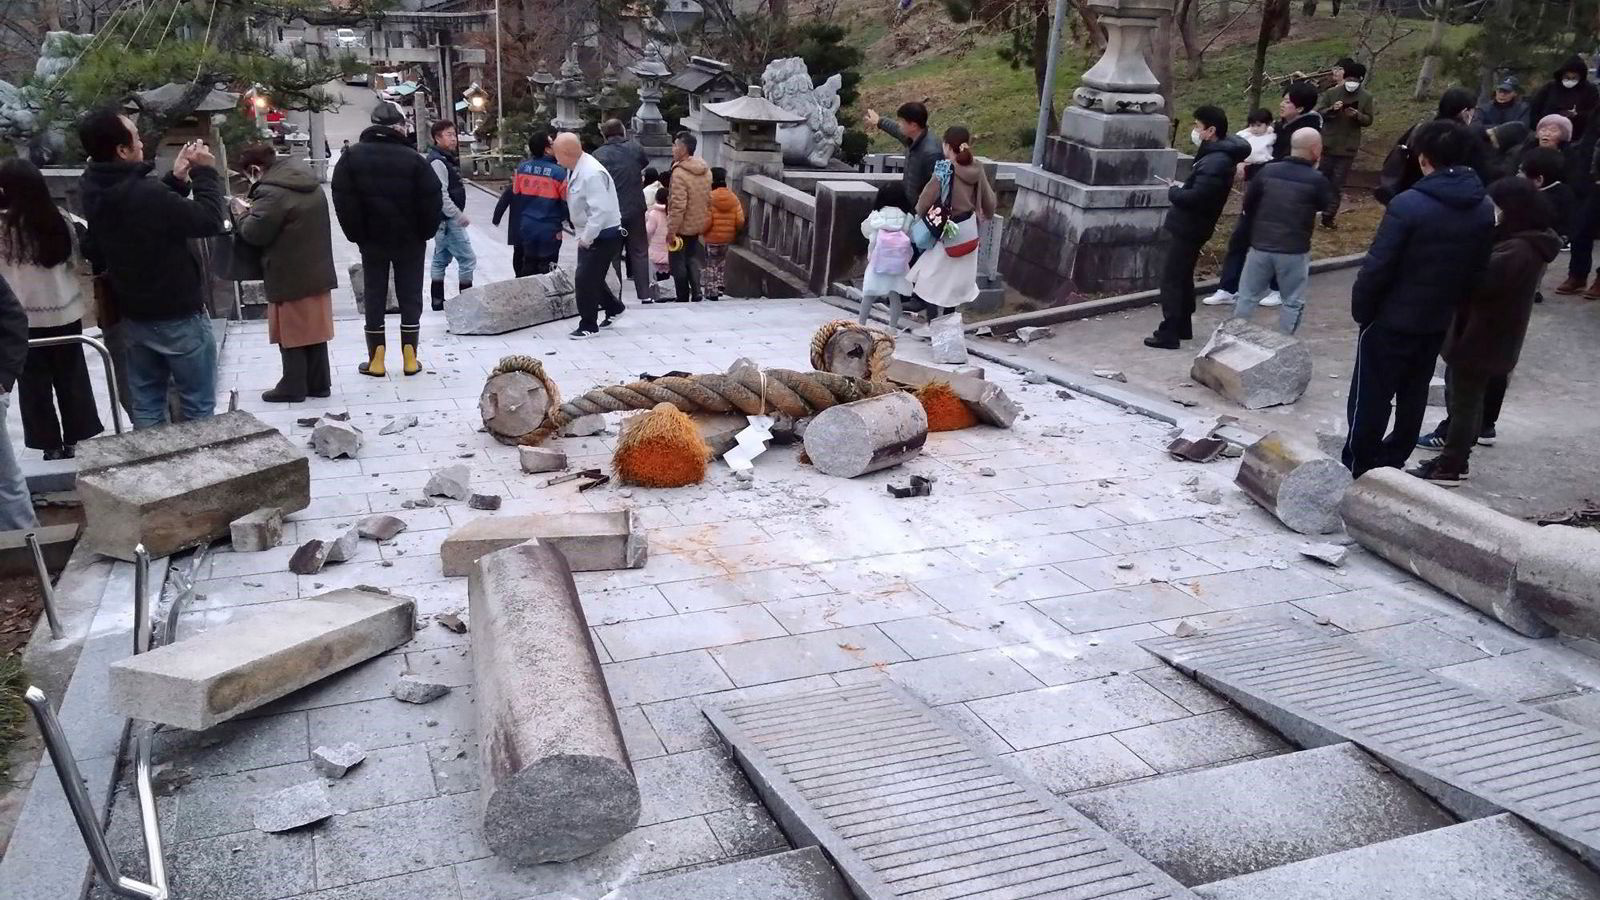 Tsunamivarsel etter kraftig jordskjelv i Japan